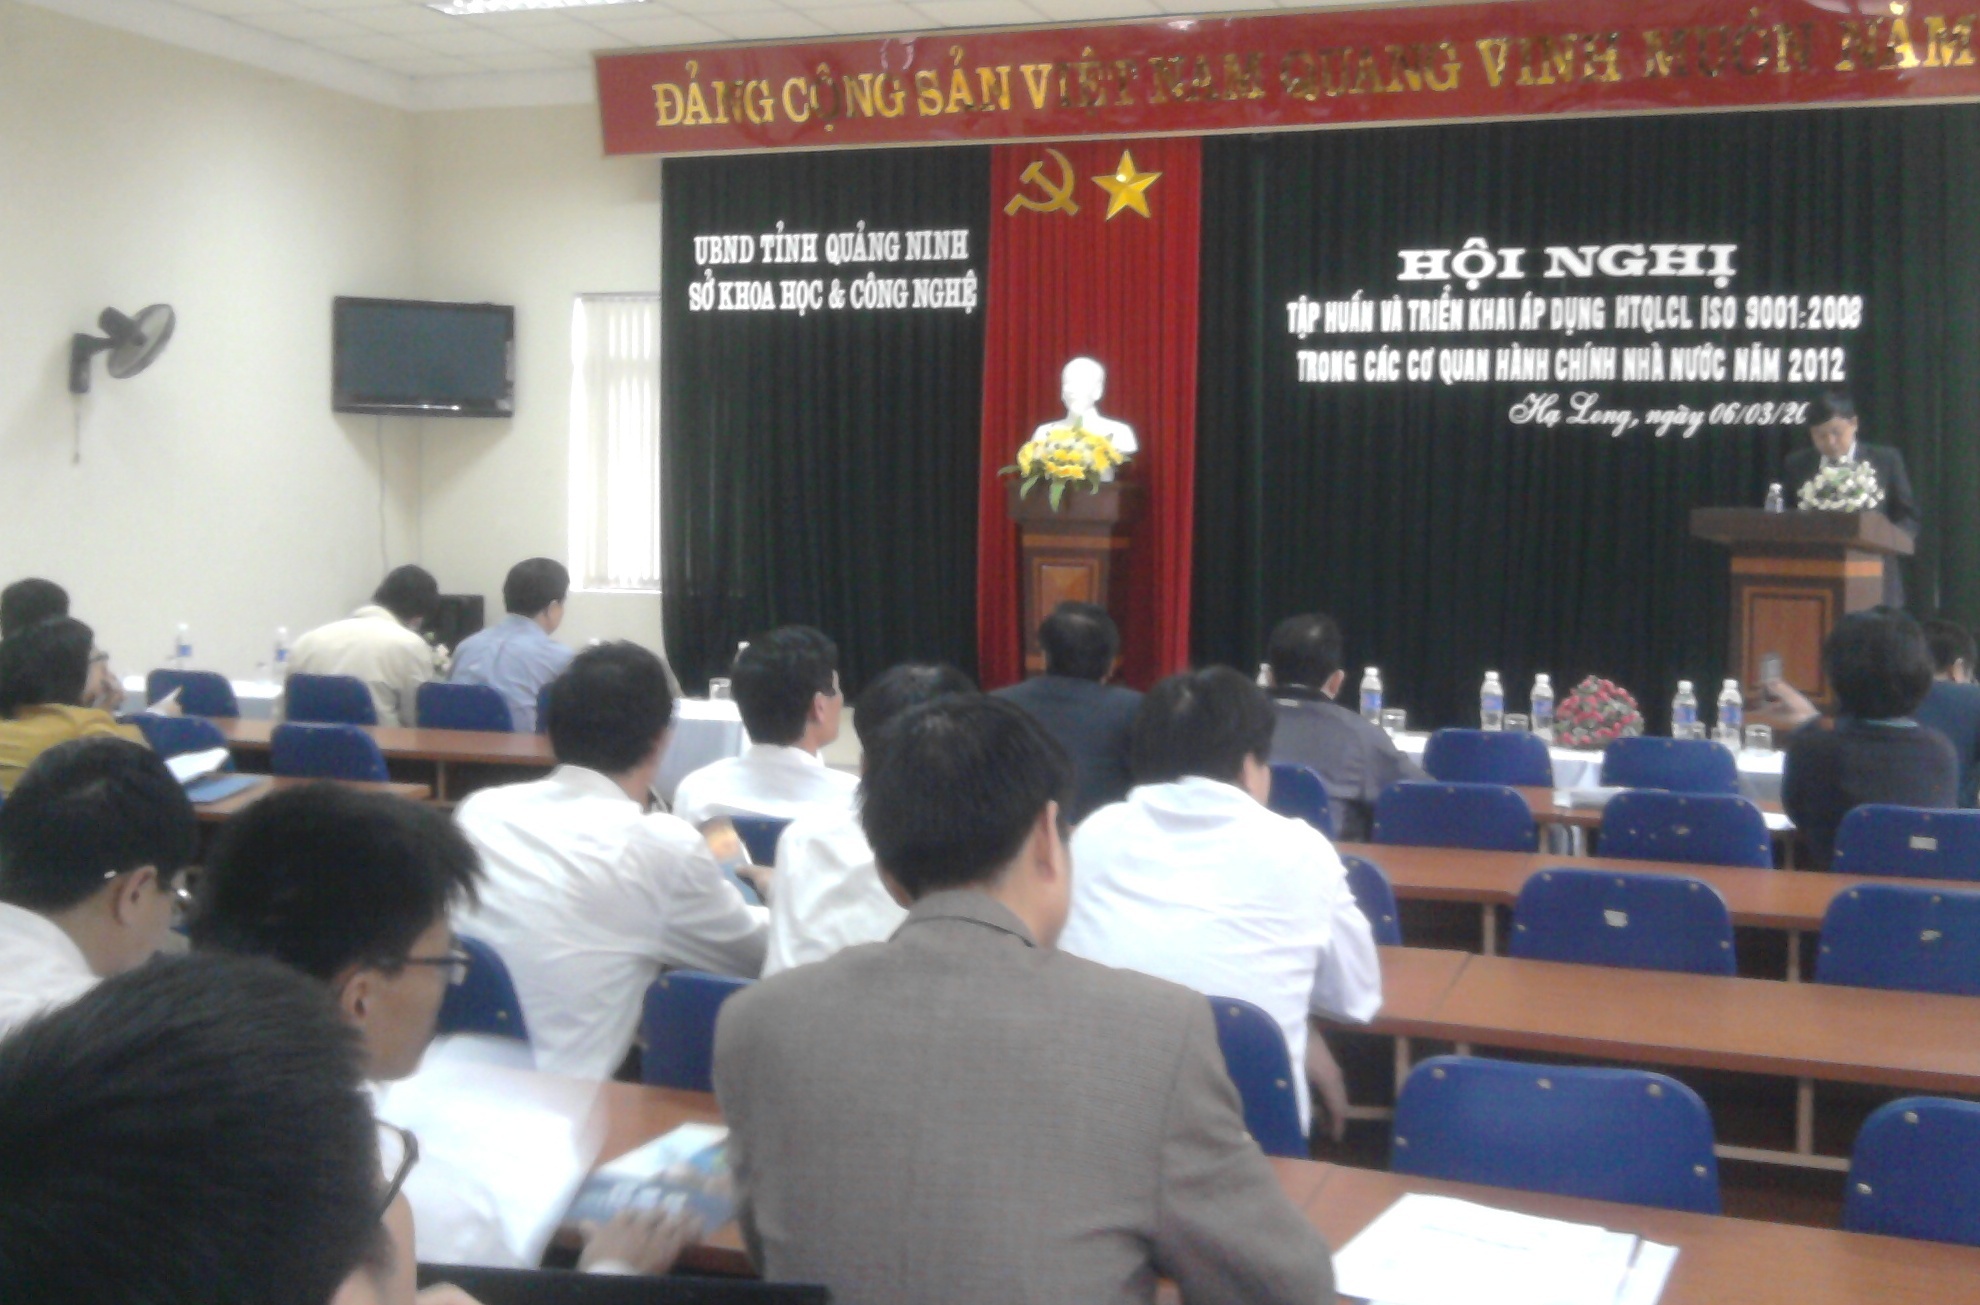 Hội nghị triển khai kế hoạch áp dụng Hệ thống quản lý chất lượng theo TCVN ISO 9001:2008 vào hoạt động của các cơ quan HCNN tỉnh Quảng Ninh năm 2012